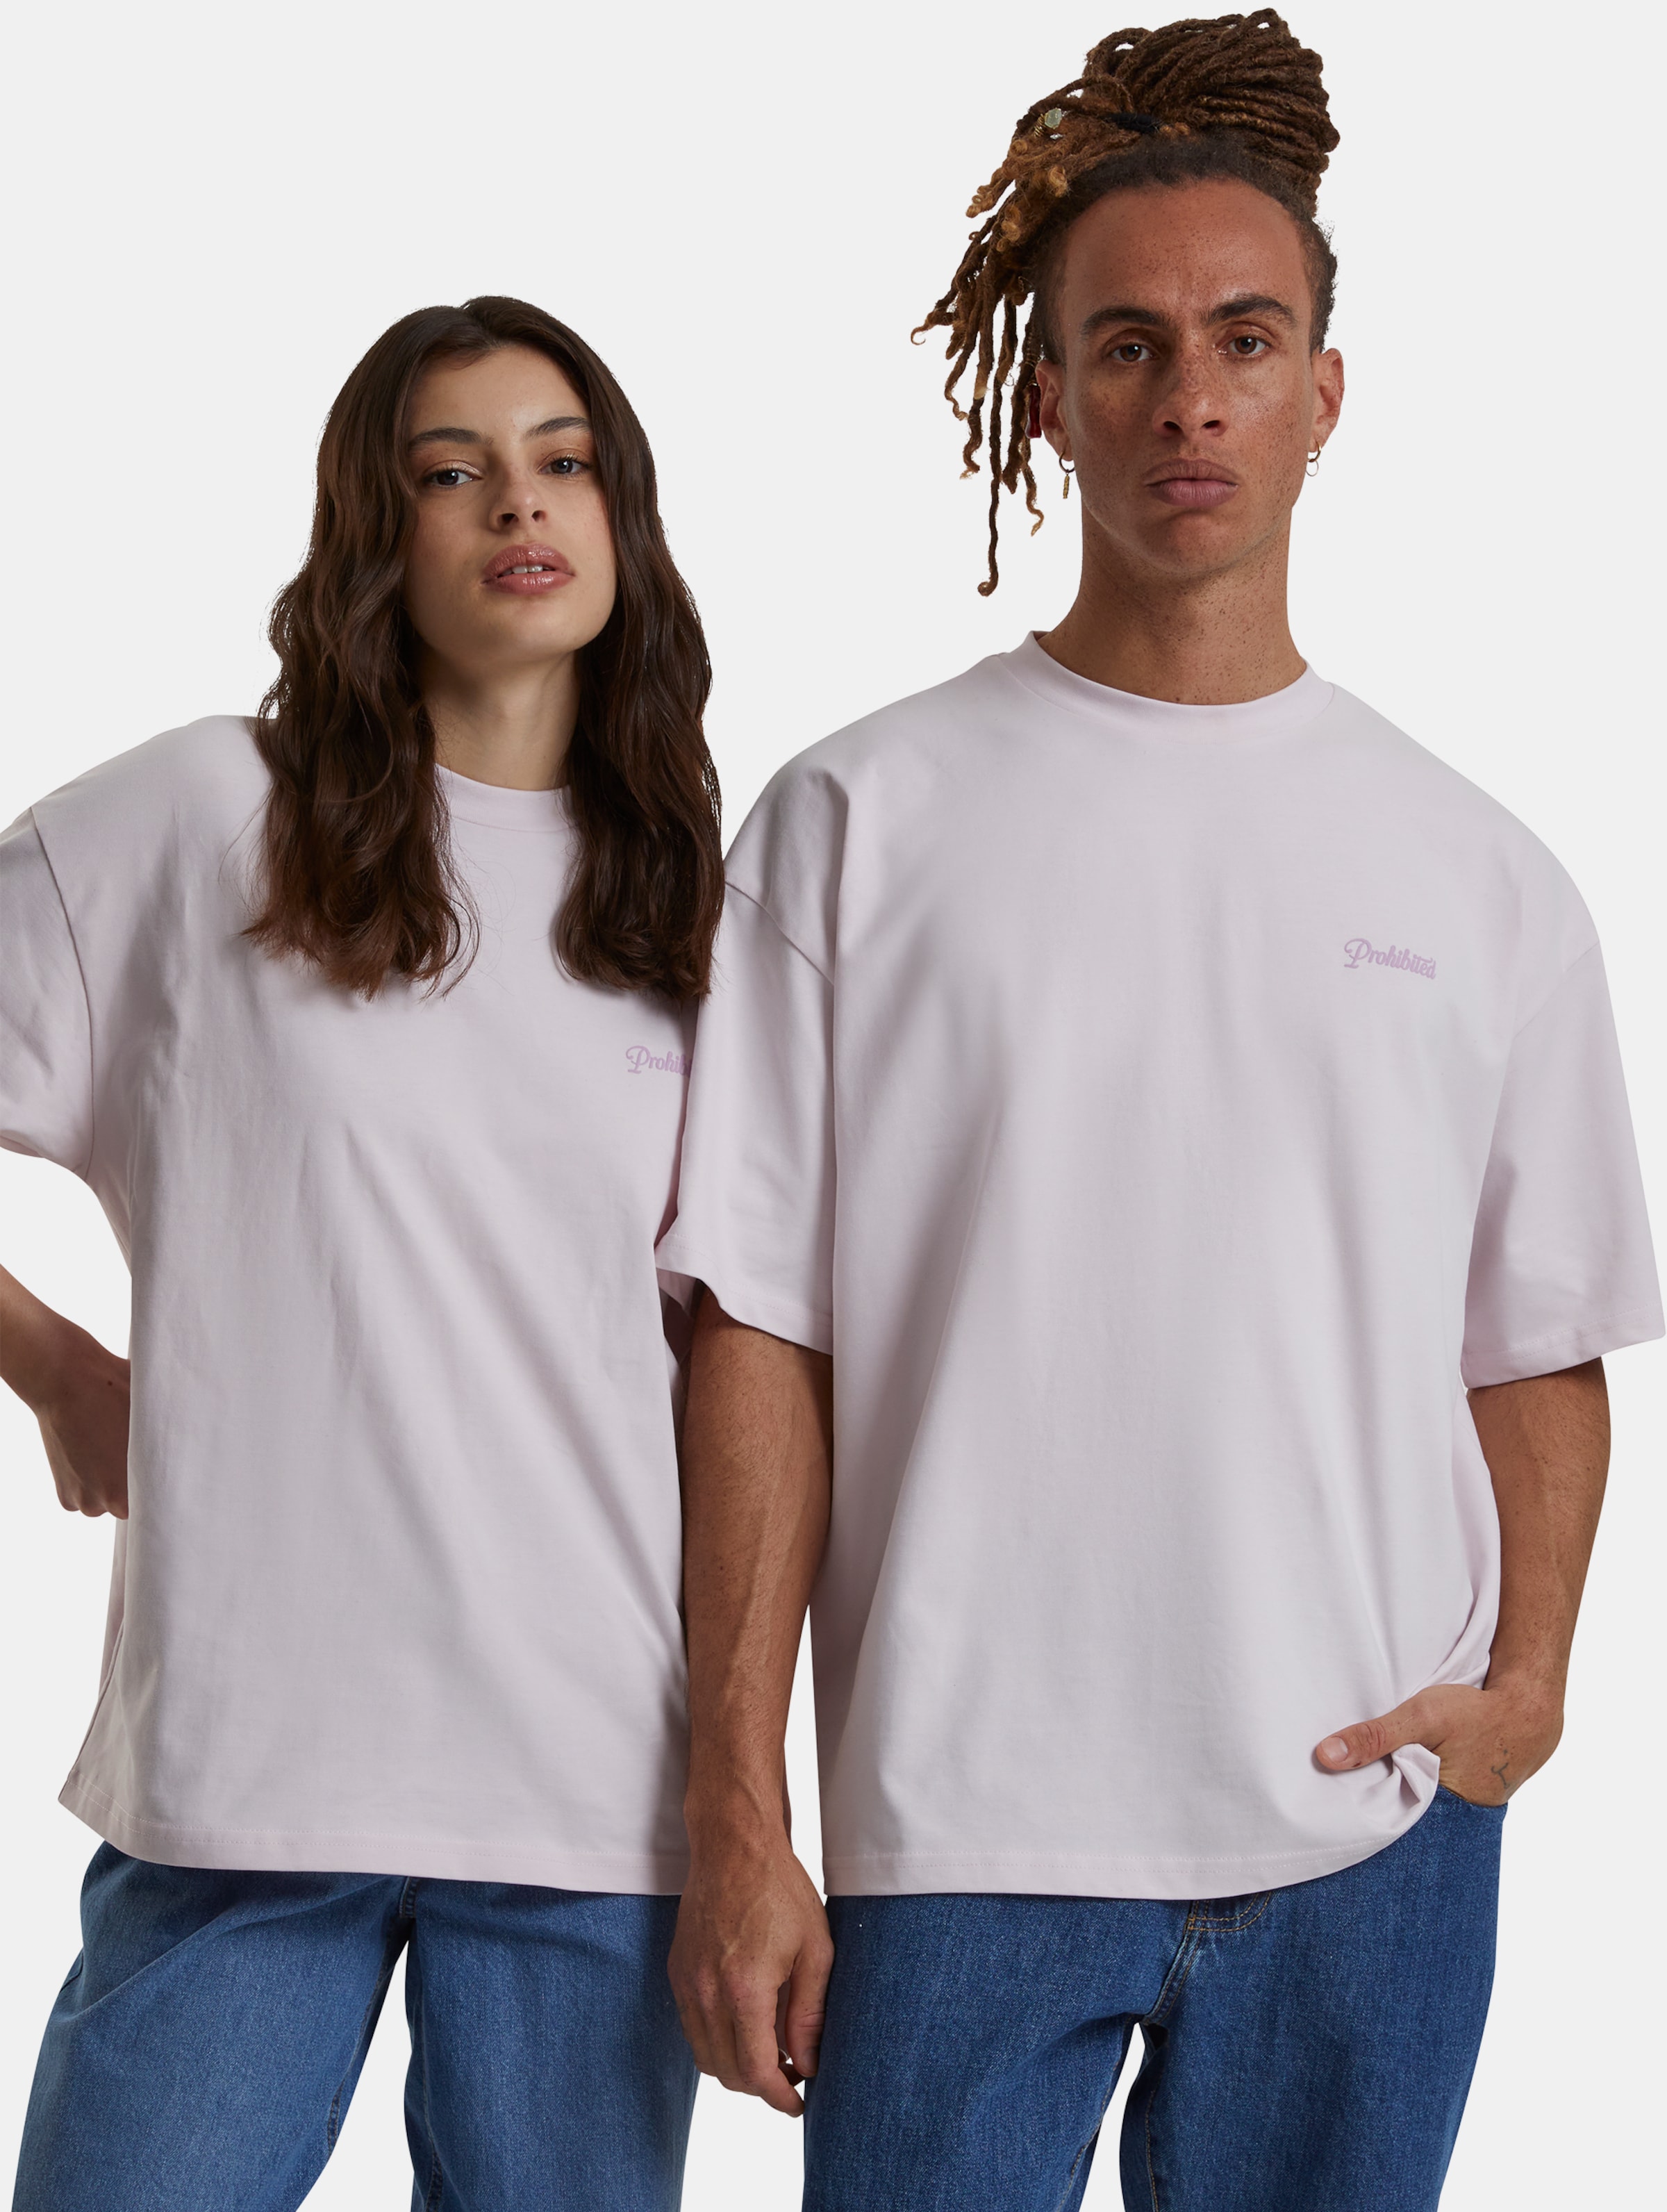 Prohibited 10119 V2 T-Shirts Frauen,Männer,Unisex op kleur roze, Maat XXL